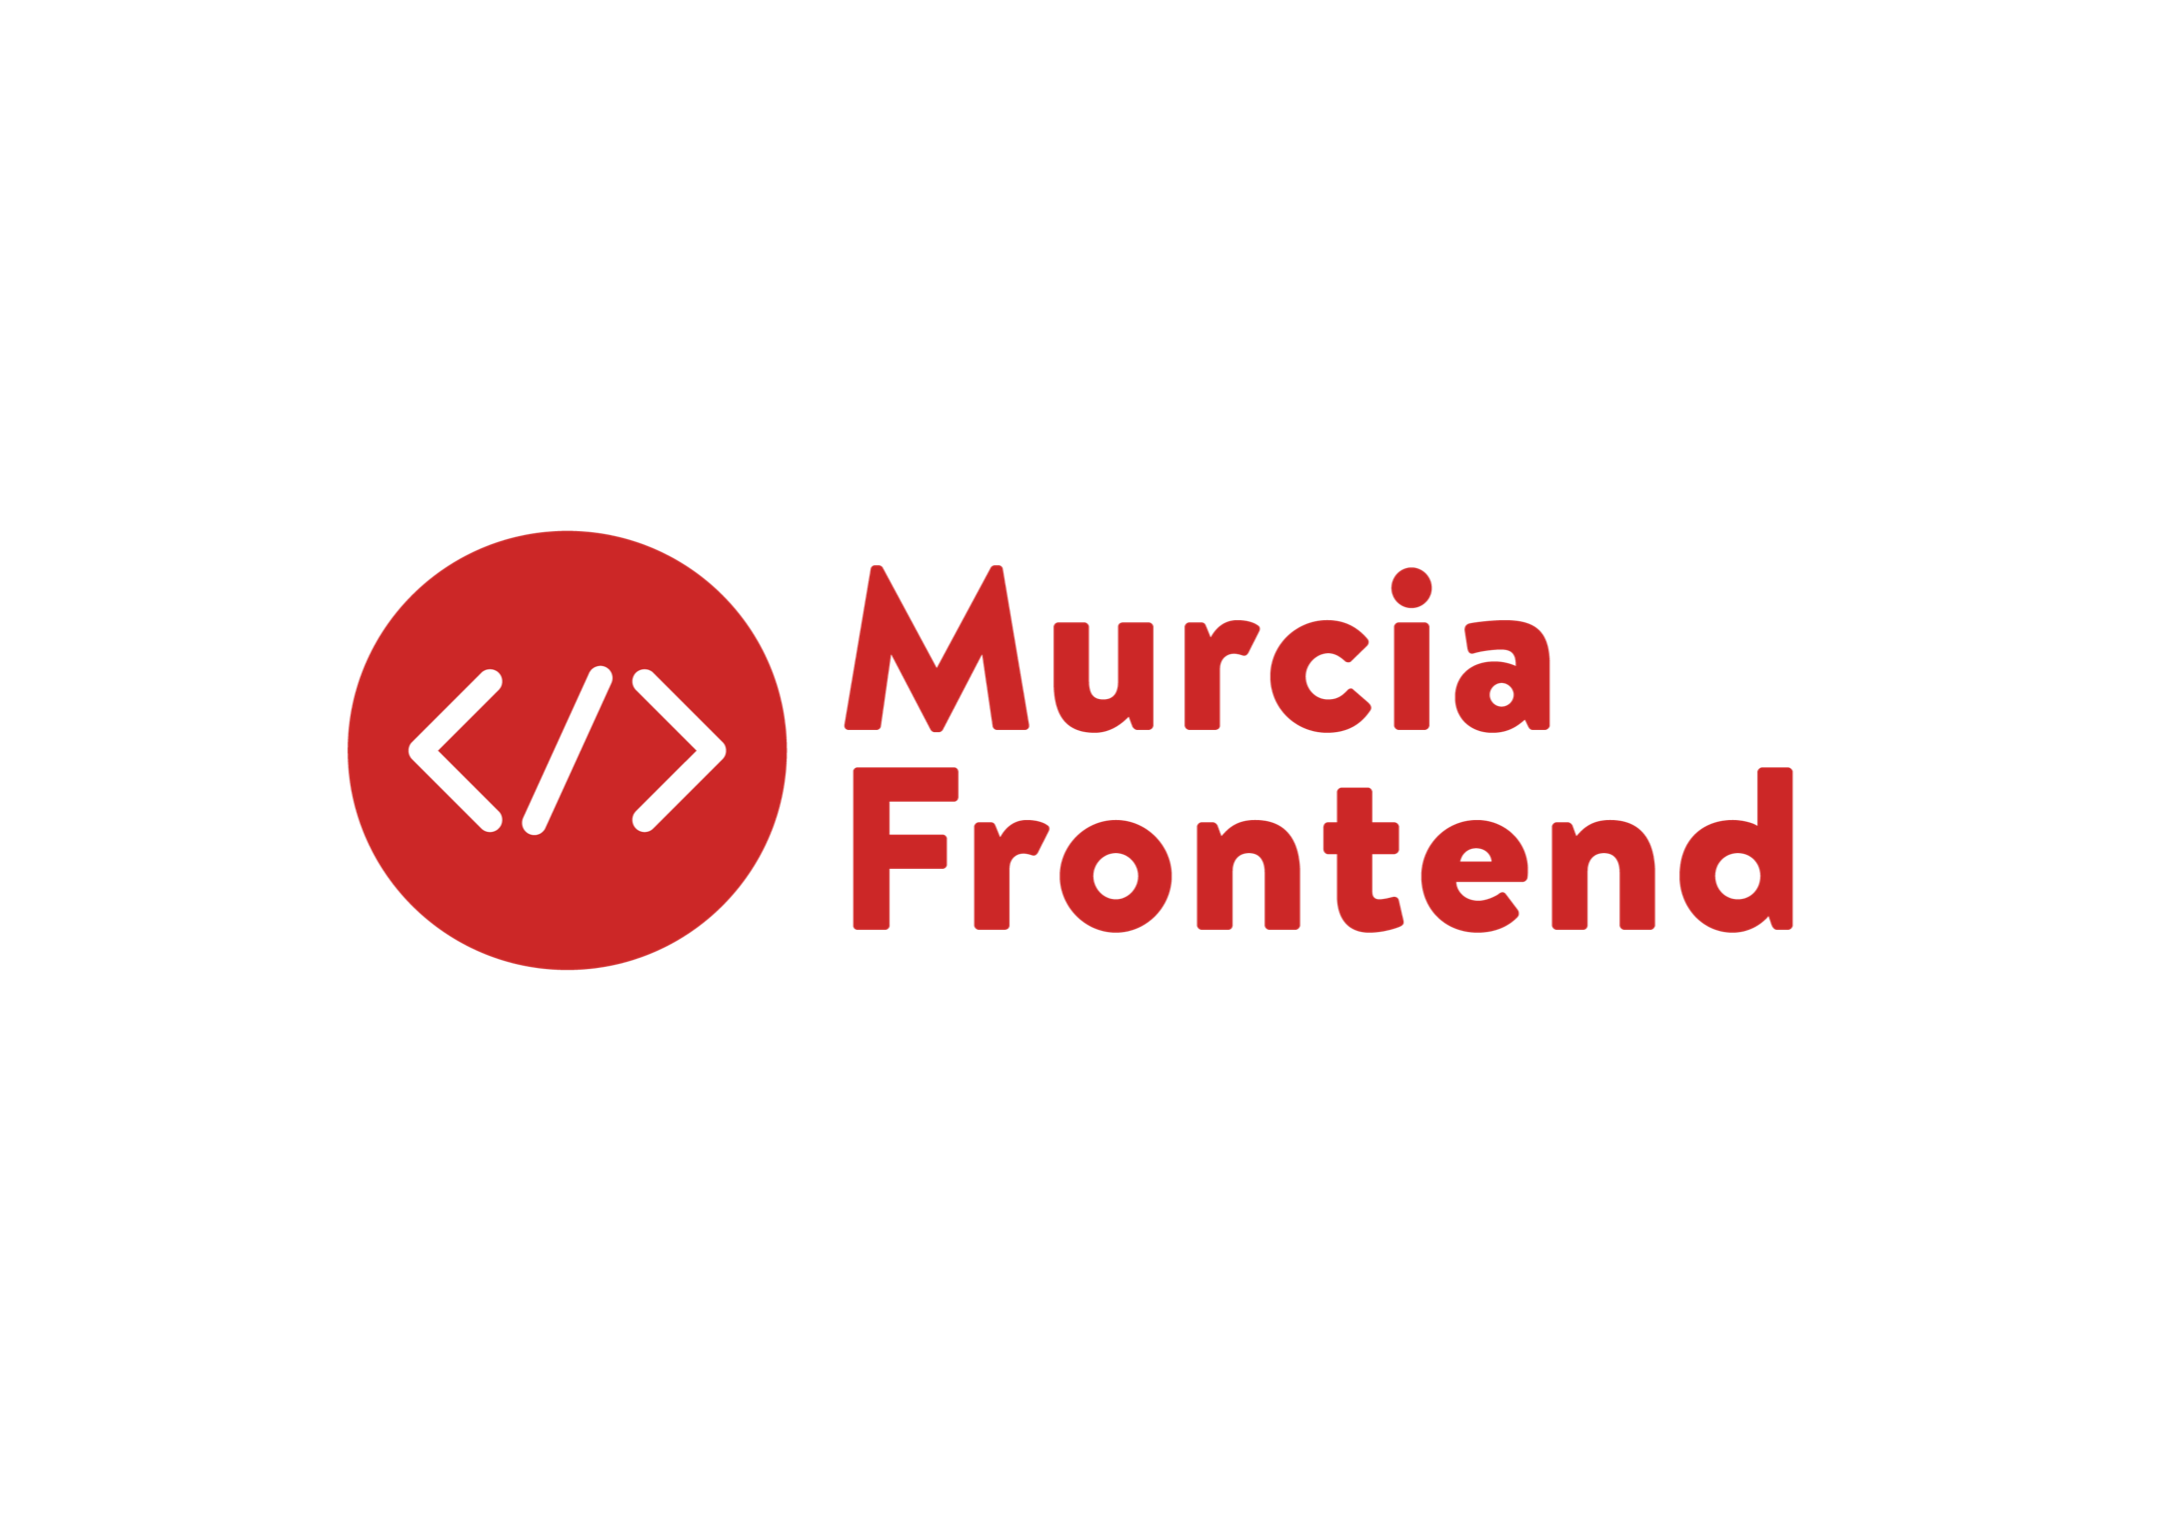 Diseño del logotipo para Murcia Frontend - Un trabajo de Silvia Calavera